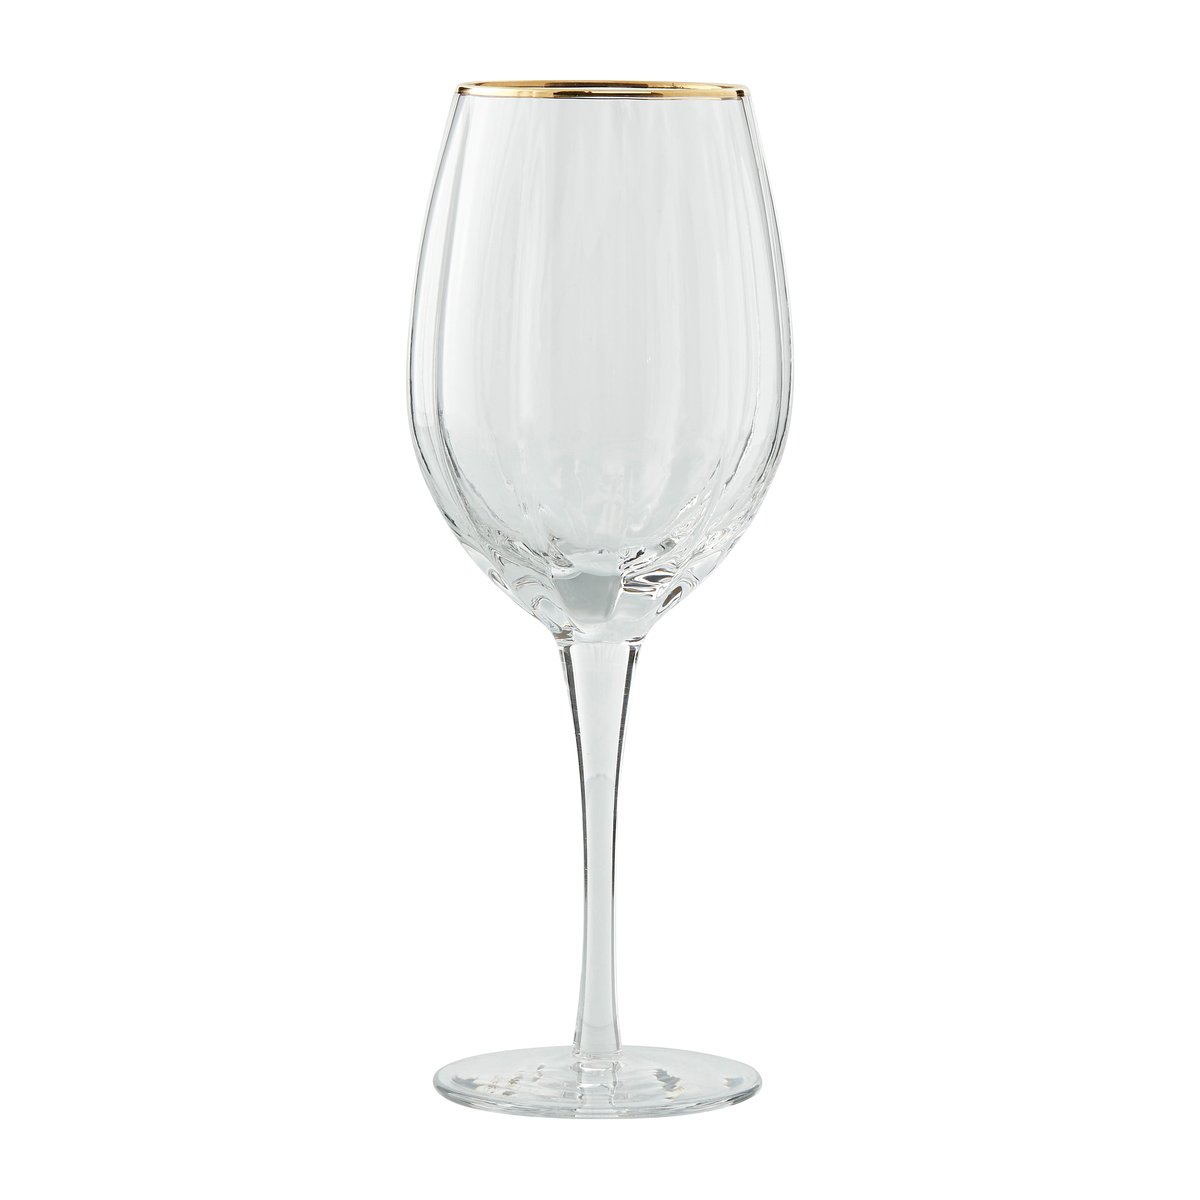 Lene Bjerre Claudine hvidvinsglas 45,5 cl Clear/Light gold